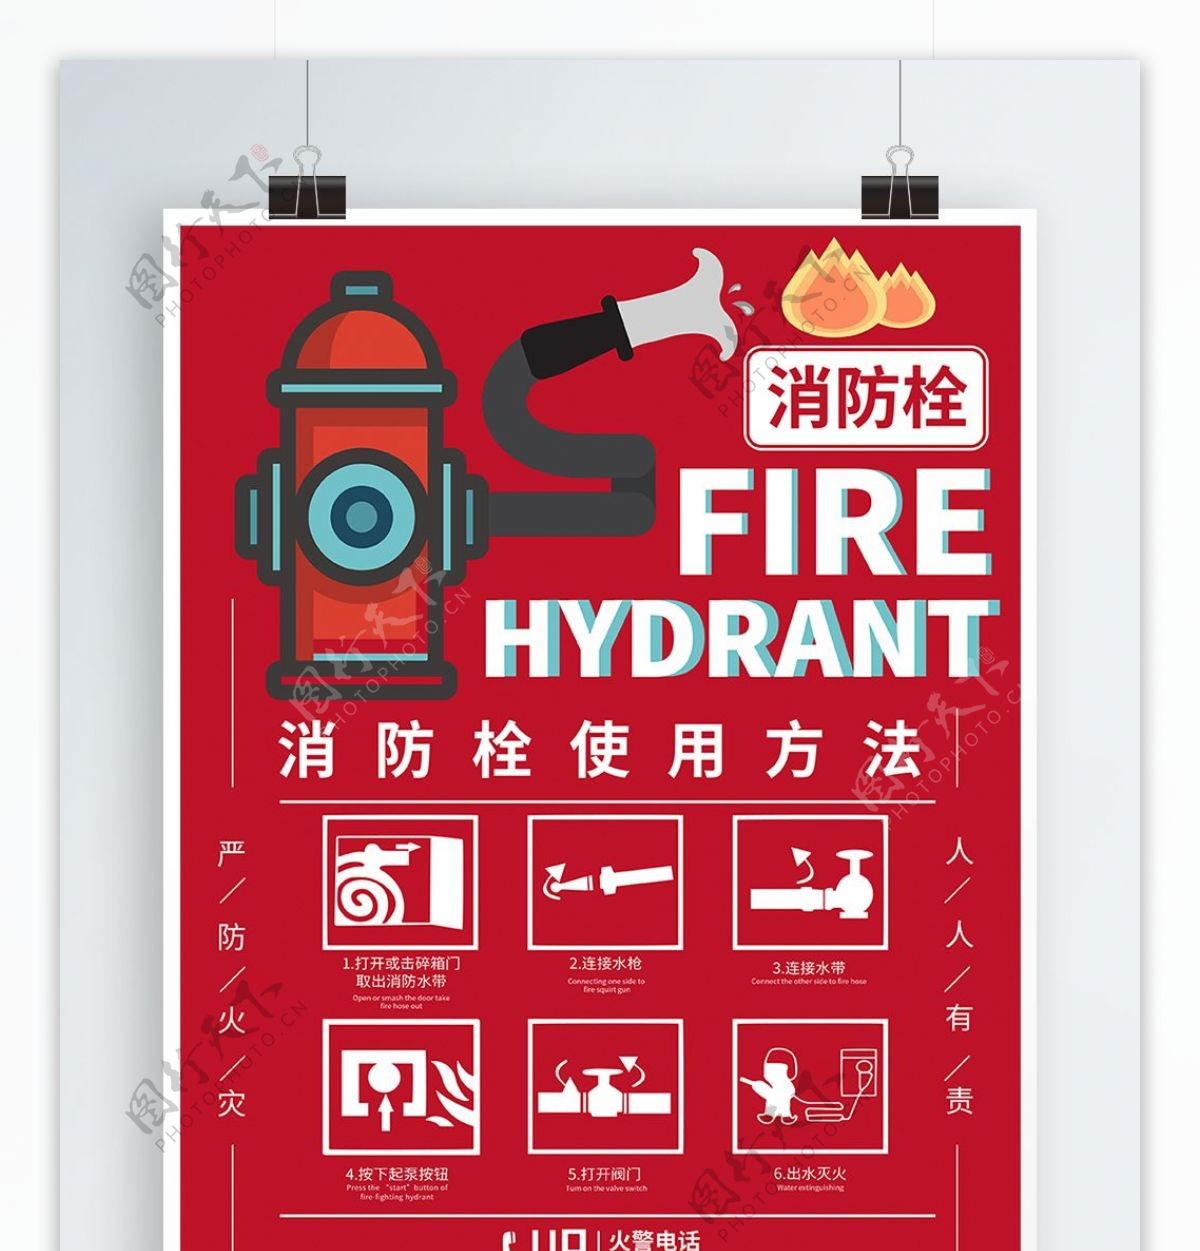 原创消防栓使用海报